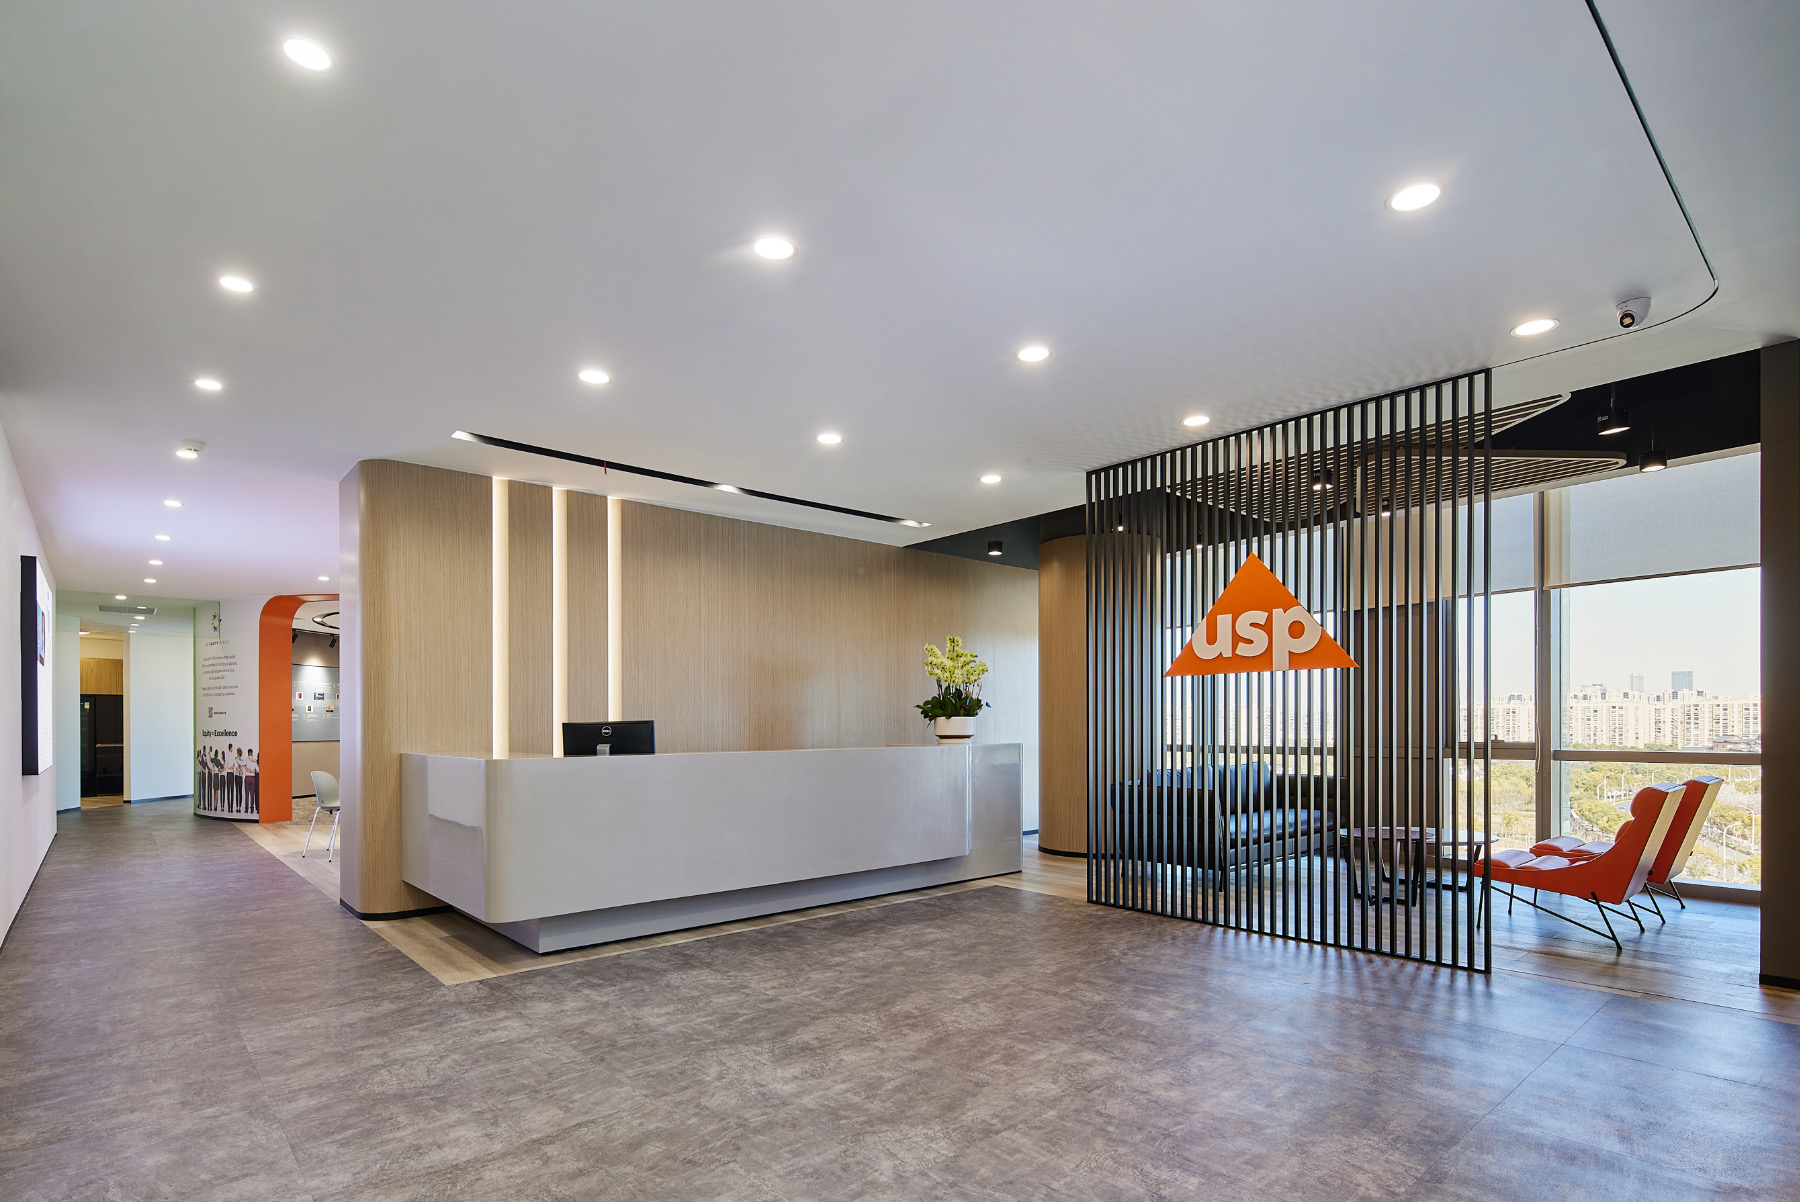 A Look Inside USP’s New Shanghai Office